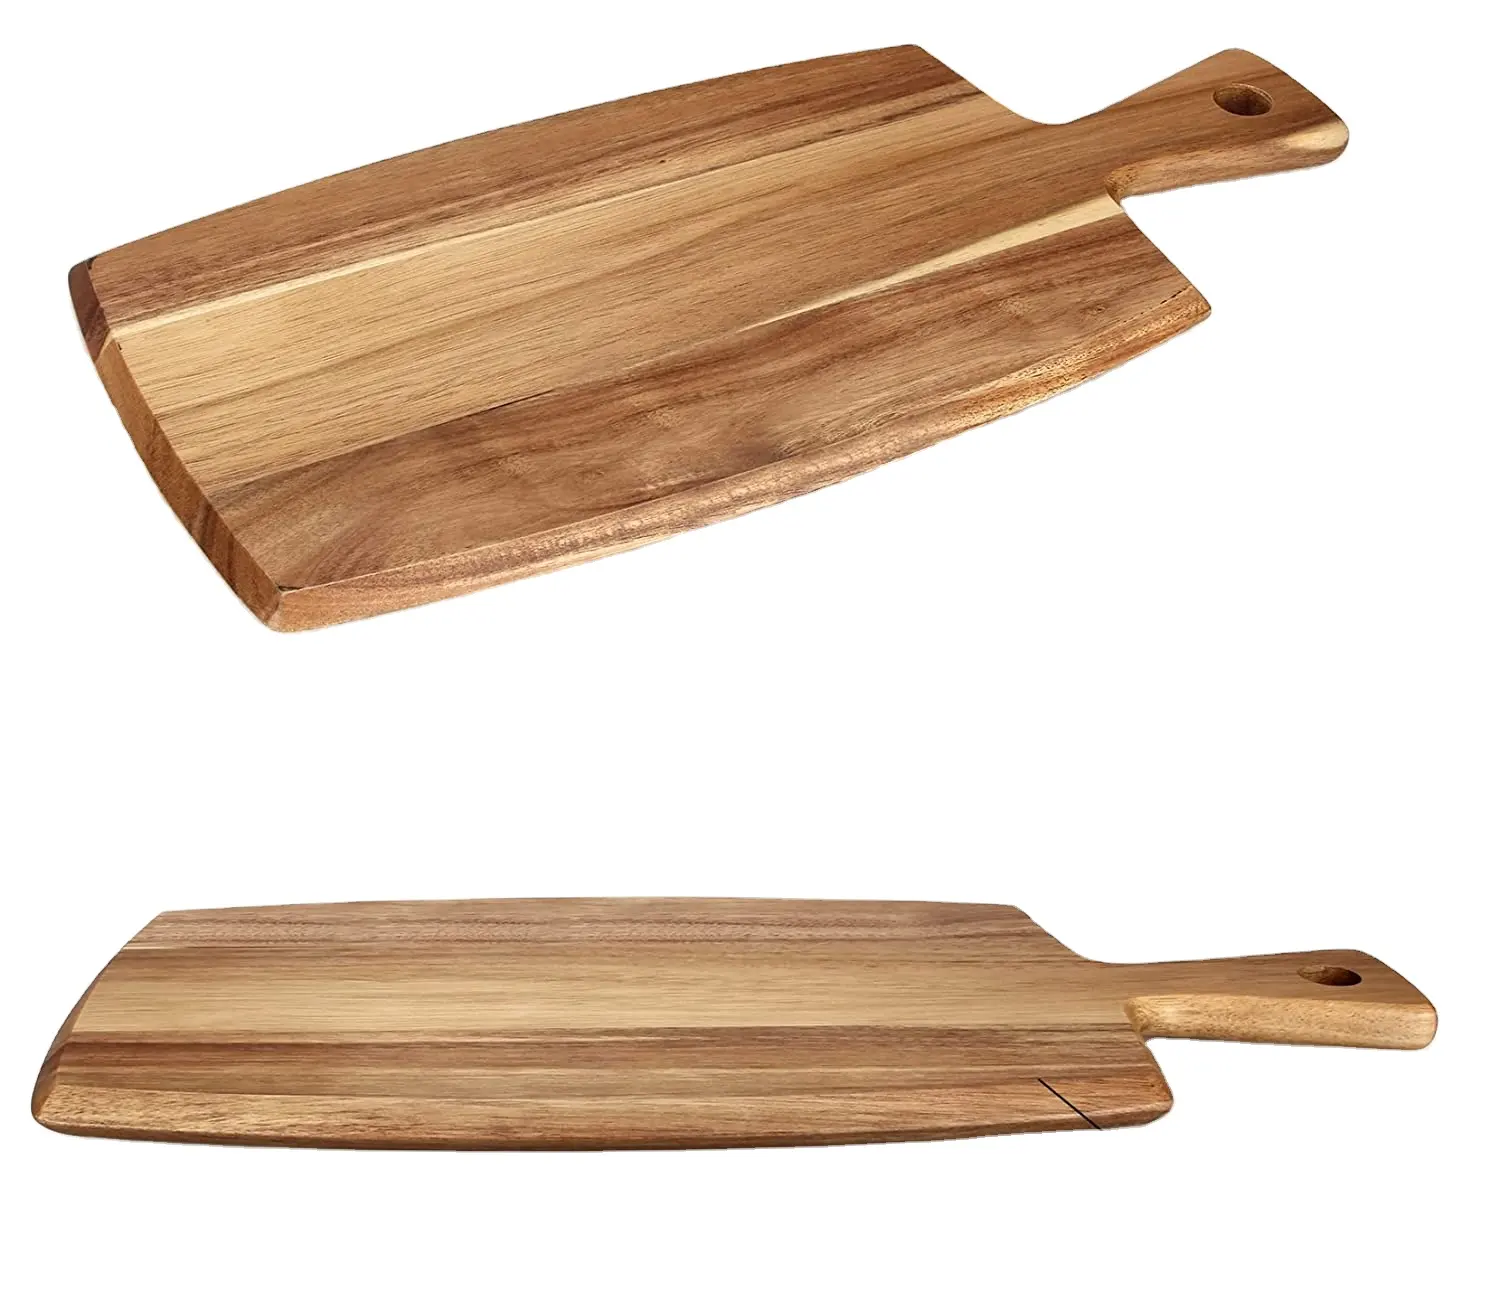 बबूल की लकड़ी काटने बोर्ड के साथ संभाल लकड़ी काट बोर्डों रसोई सबसे अच्छा काटने बोर्ड के लिए मांस, पनीर, रोटी Charcuterie बोर्ड